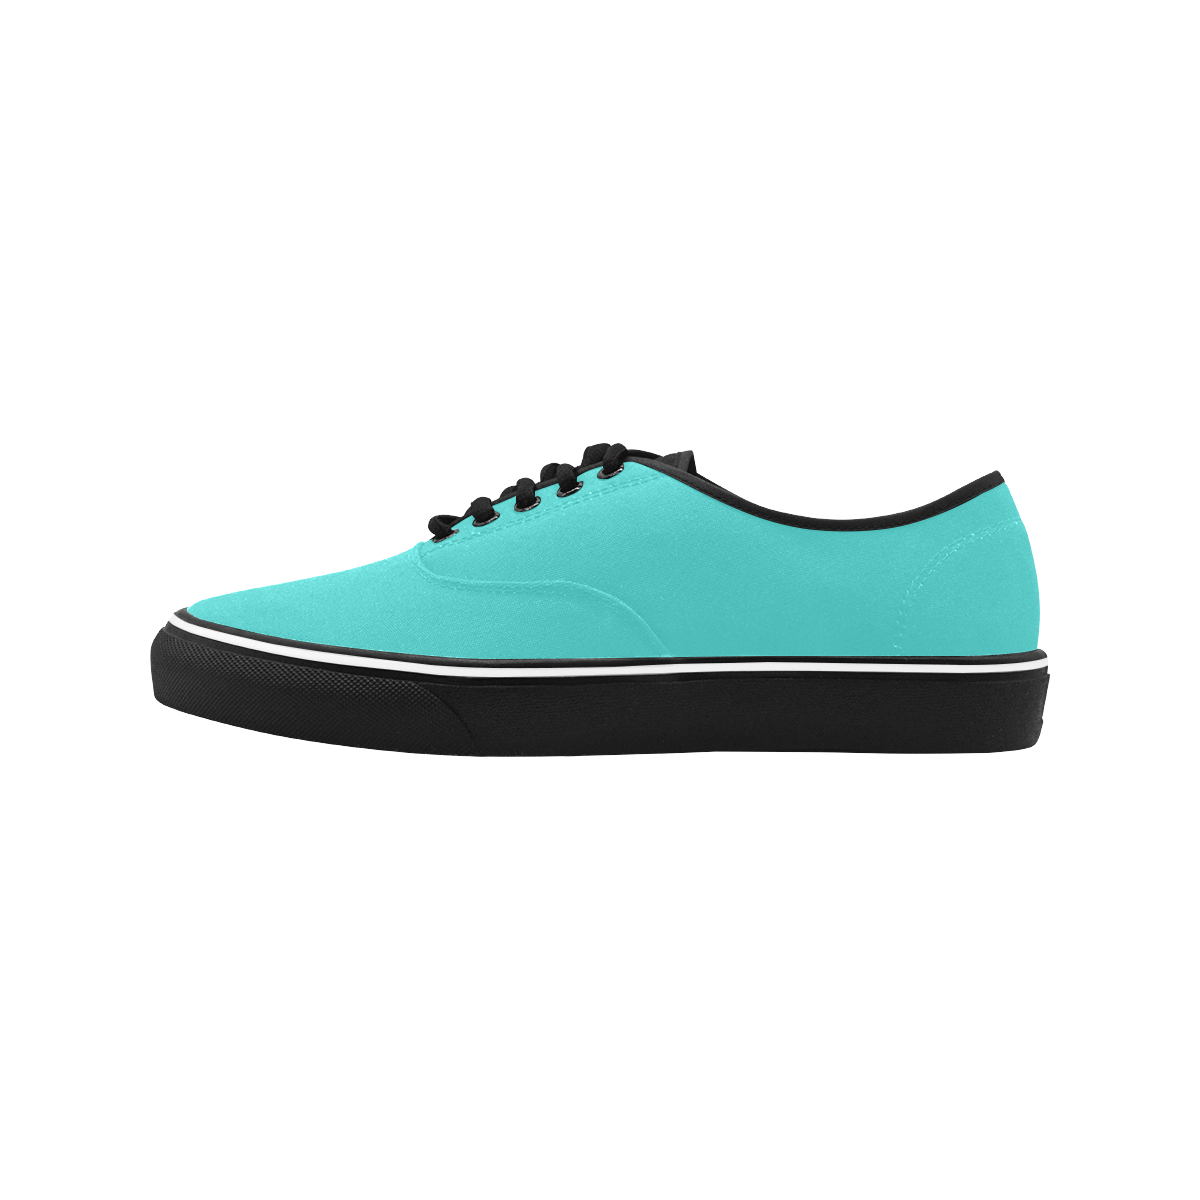 color medium turquoise Classic Men's Canvas Low Top Shoes/Large (Model E001-4)